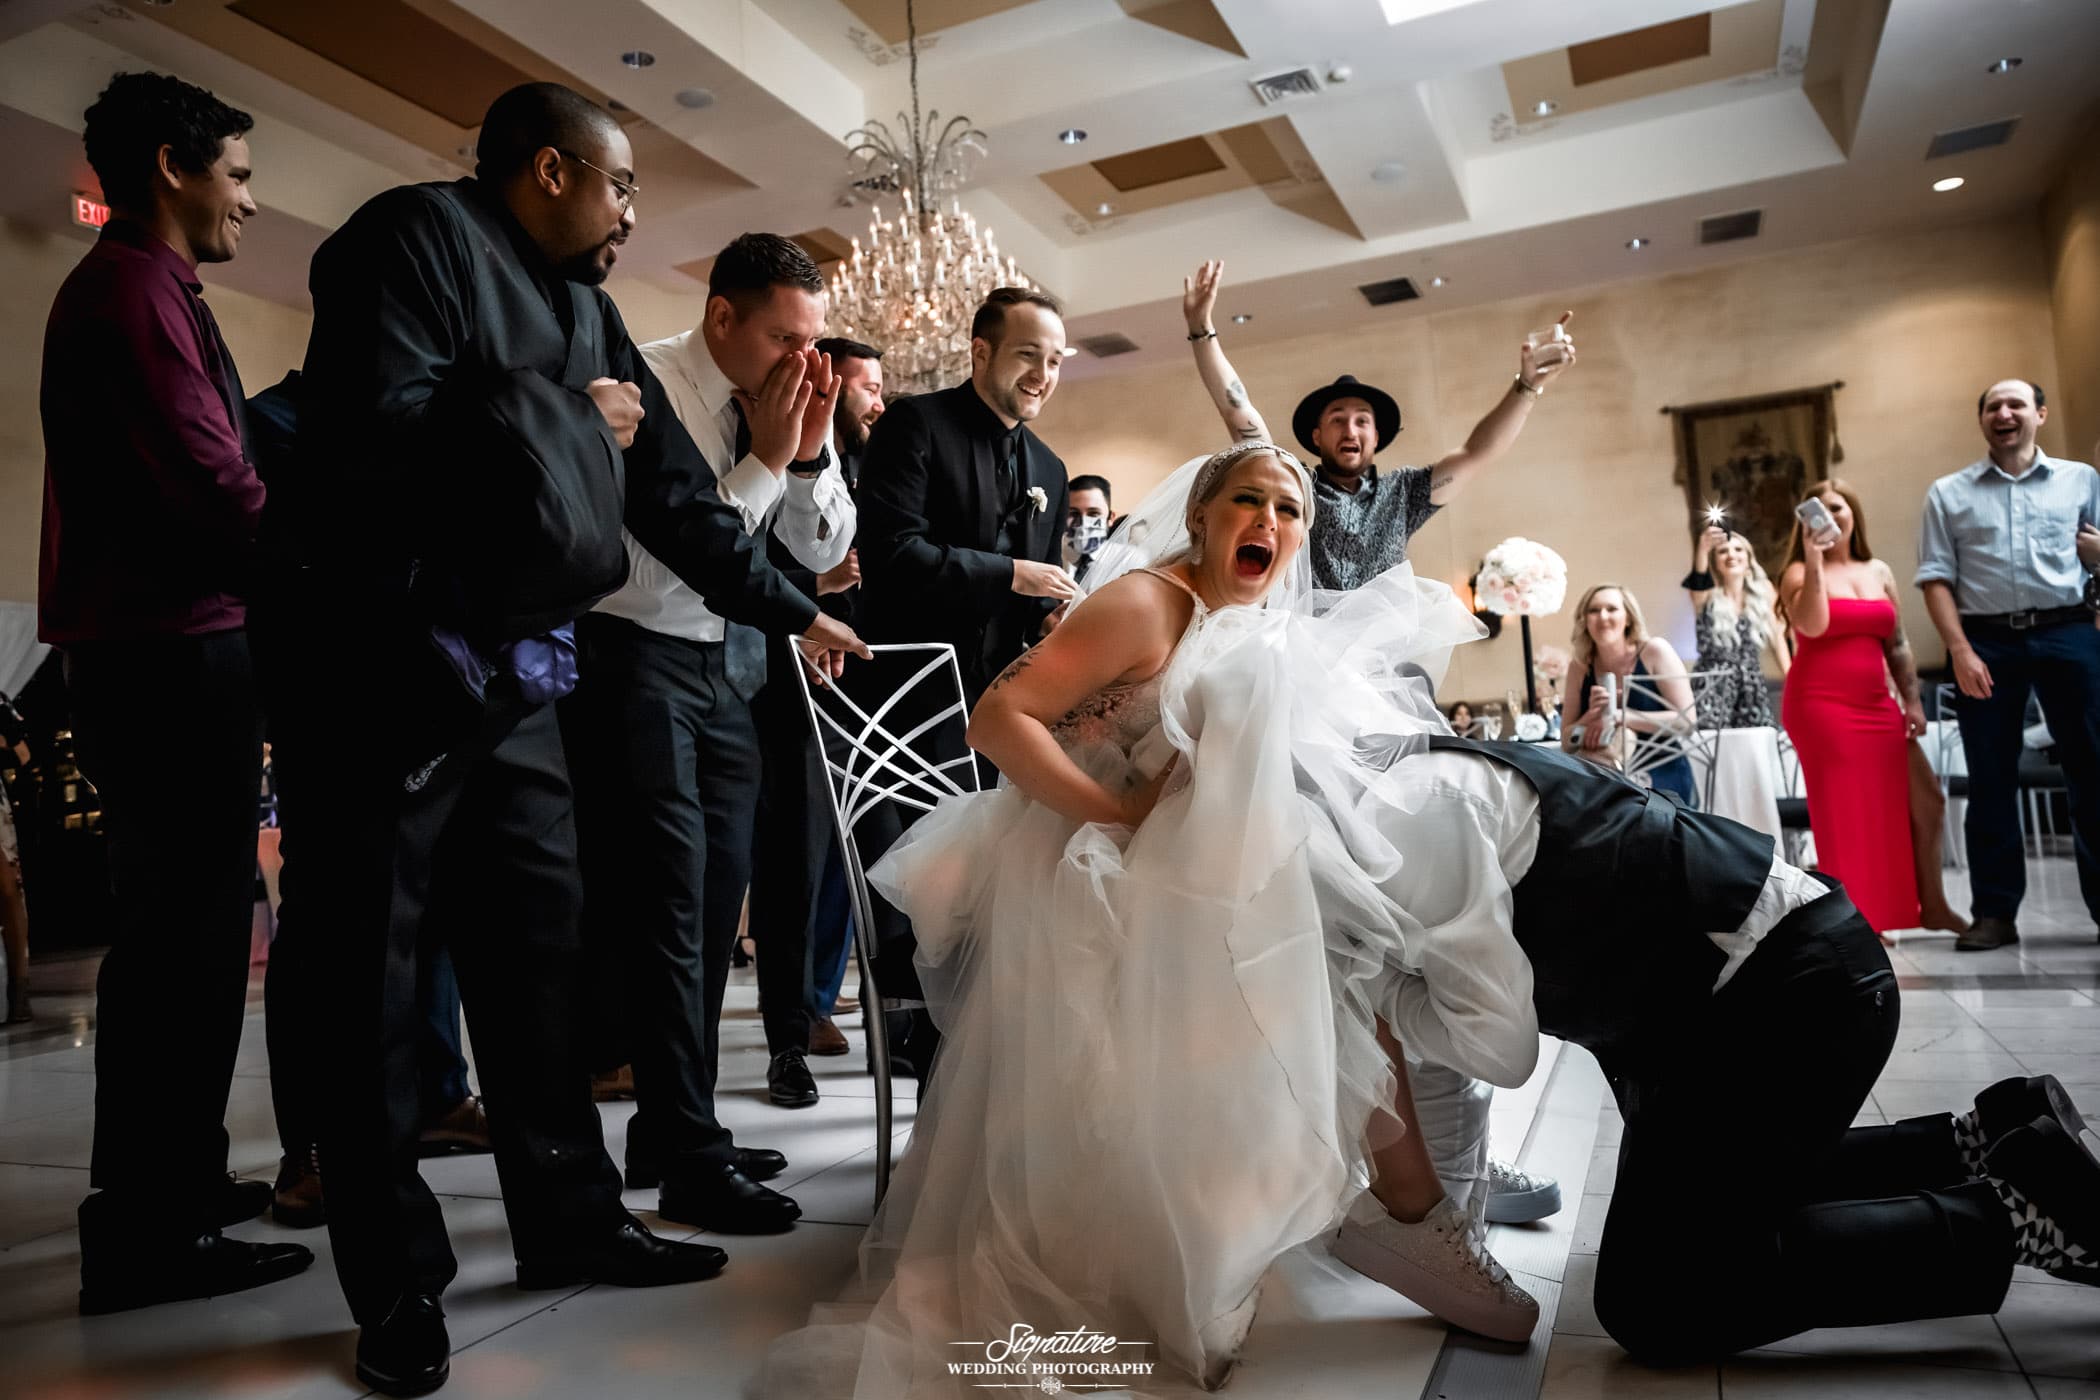 Person under brides dress for garter toss